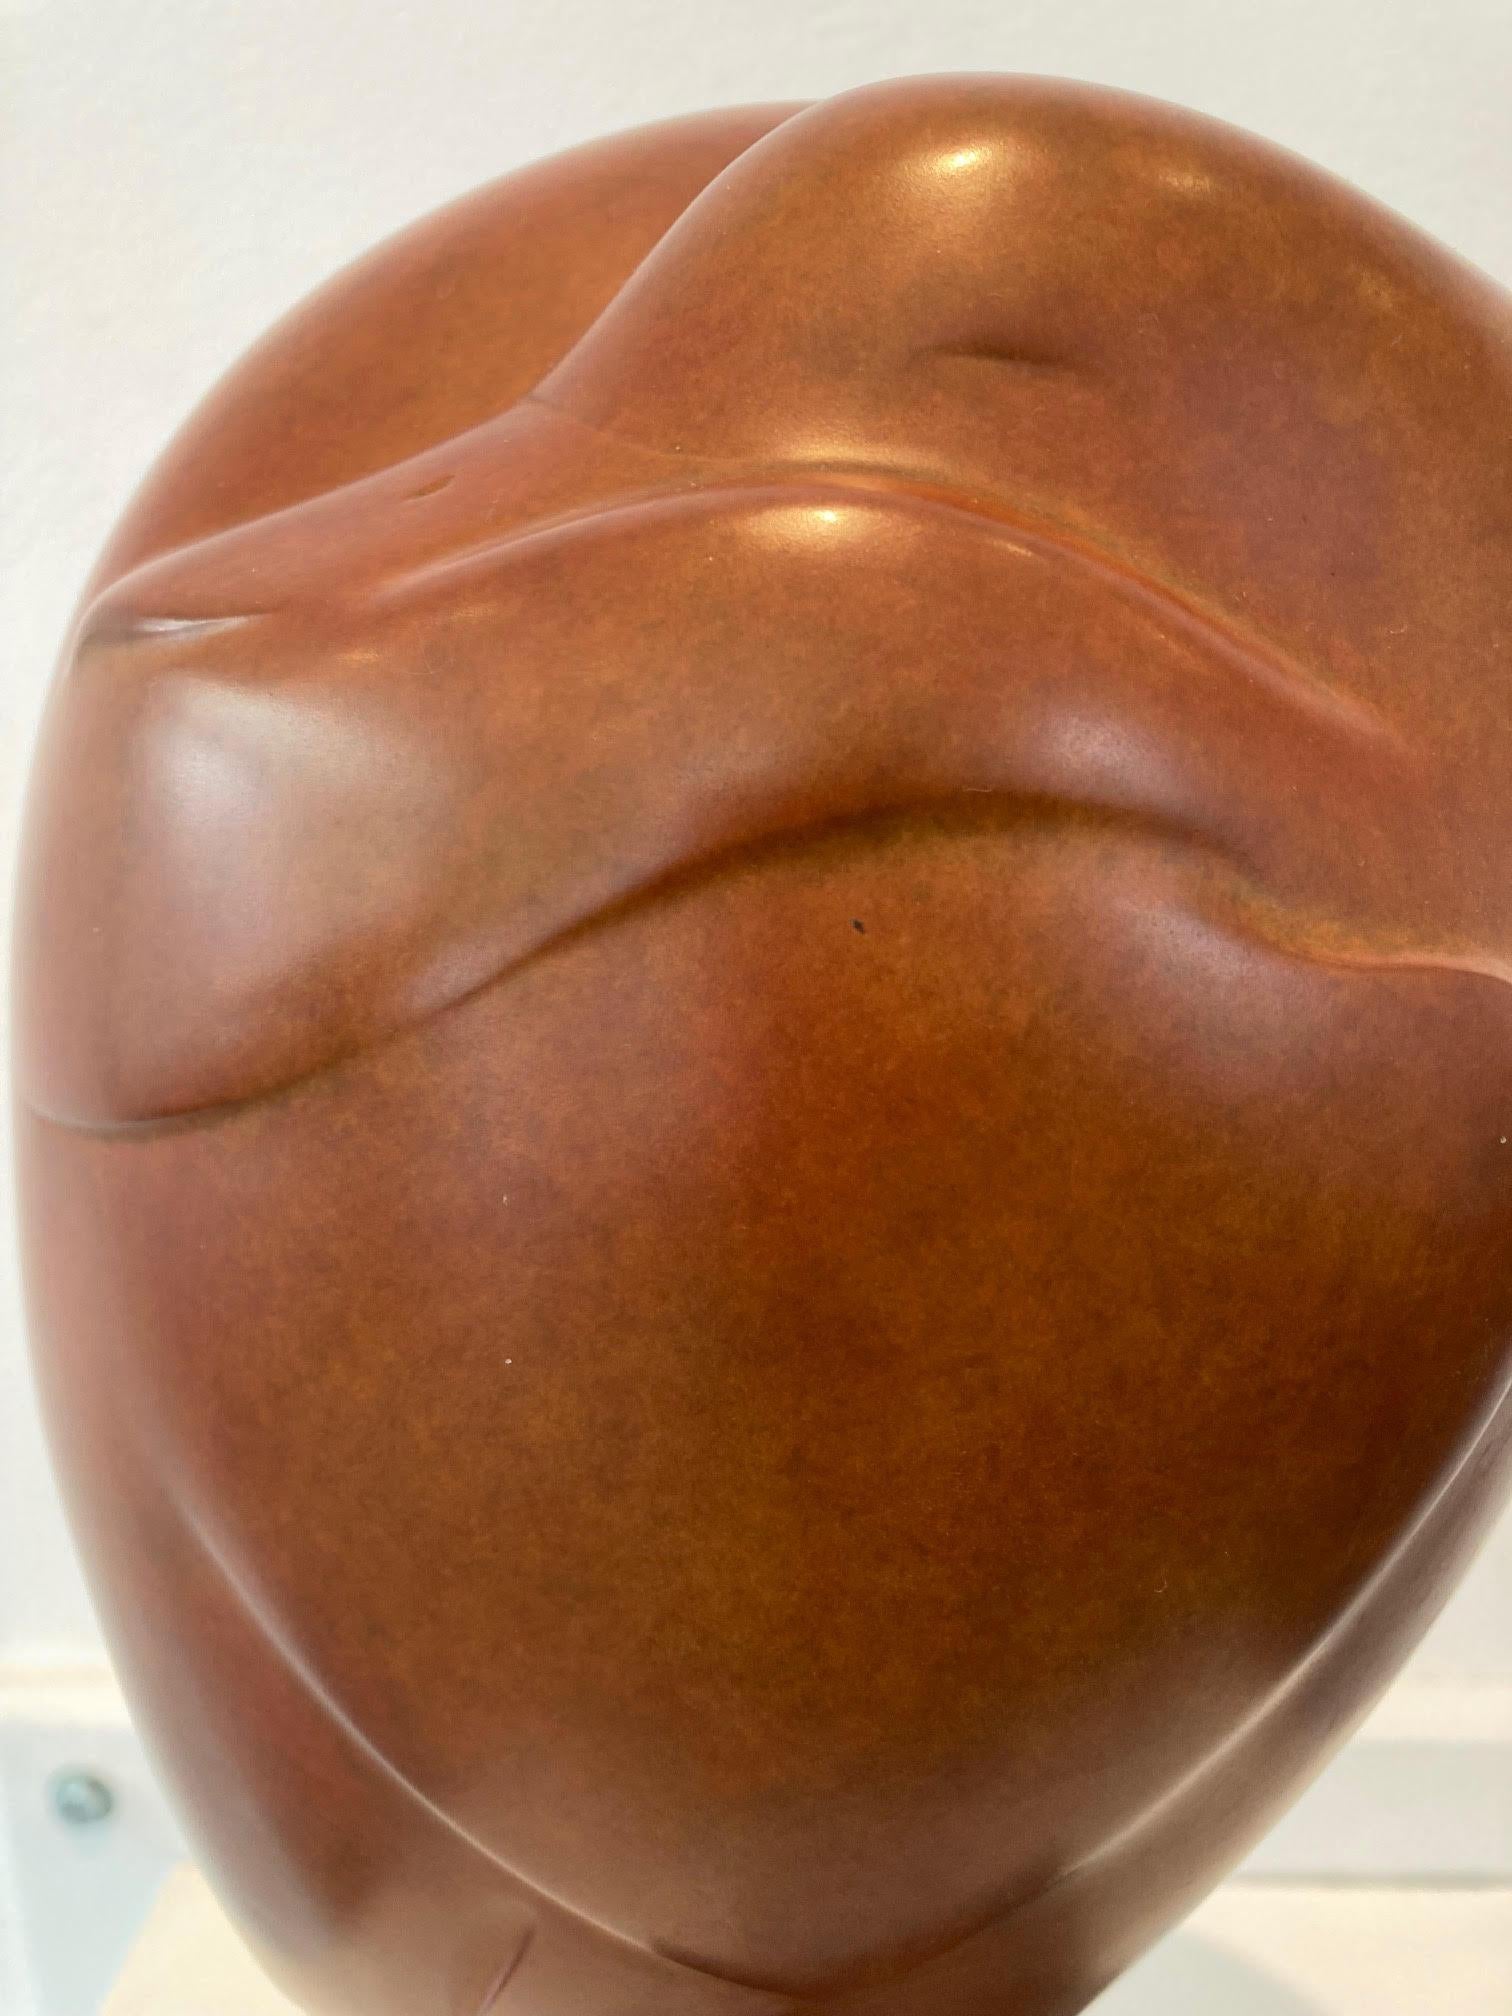 Slapend Eendje no. 6 Sleeping Duck Bird Animal Bronze Sculpture In Stock Limited Edition

Evert den Hartog (né à Groot-Ammers, aux Pays-Bas, en 1949) a suivi une formation de sculpteur à l'Académie des arts visuels de Rotterdam. Dans les années